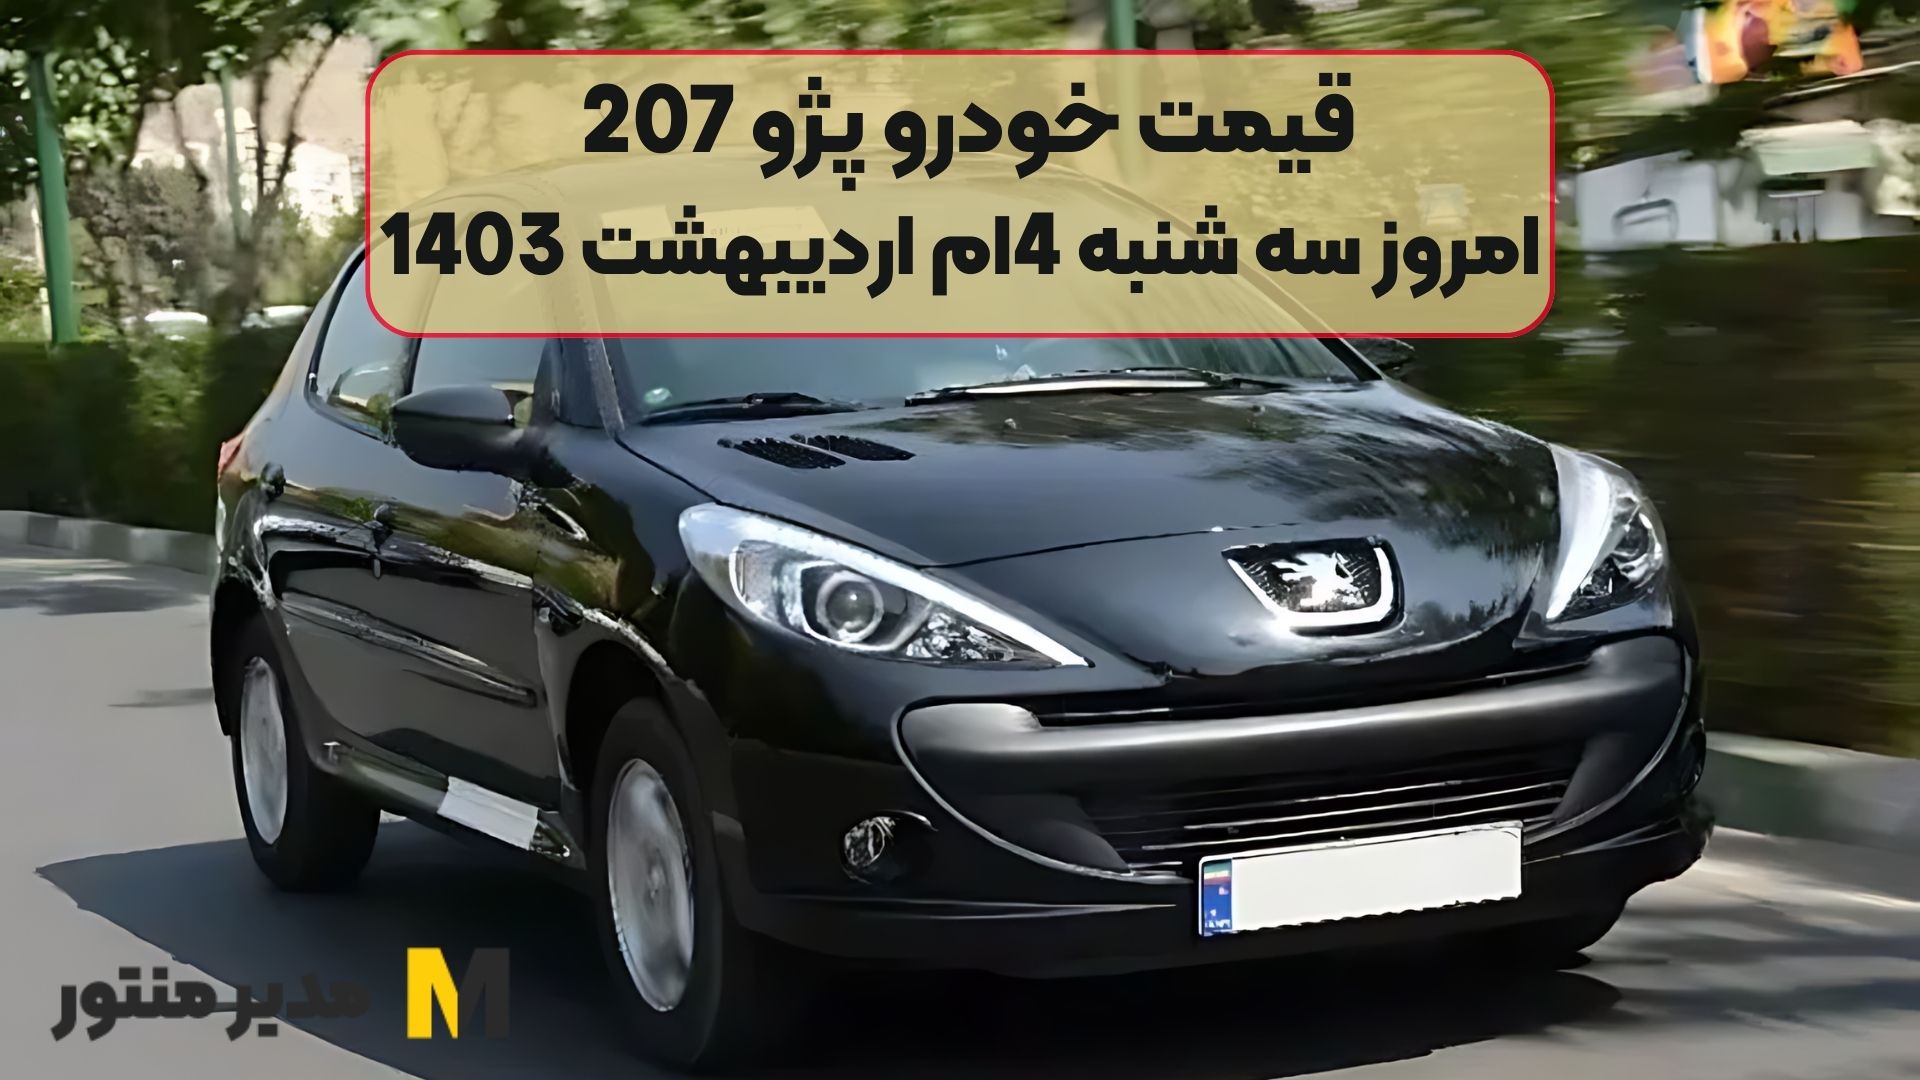 قیمت خودرو پژو 207 امروز سه شنبه 4ام اردیبهشت 1403